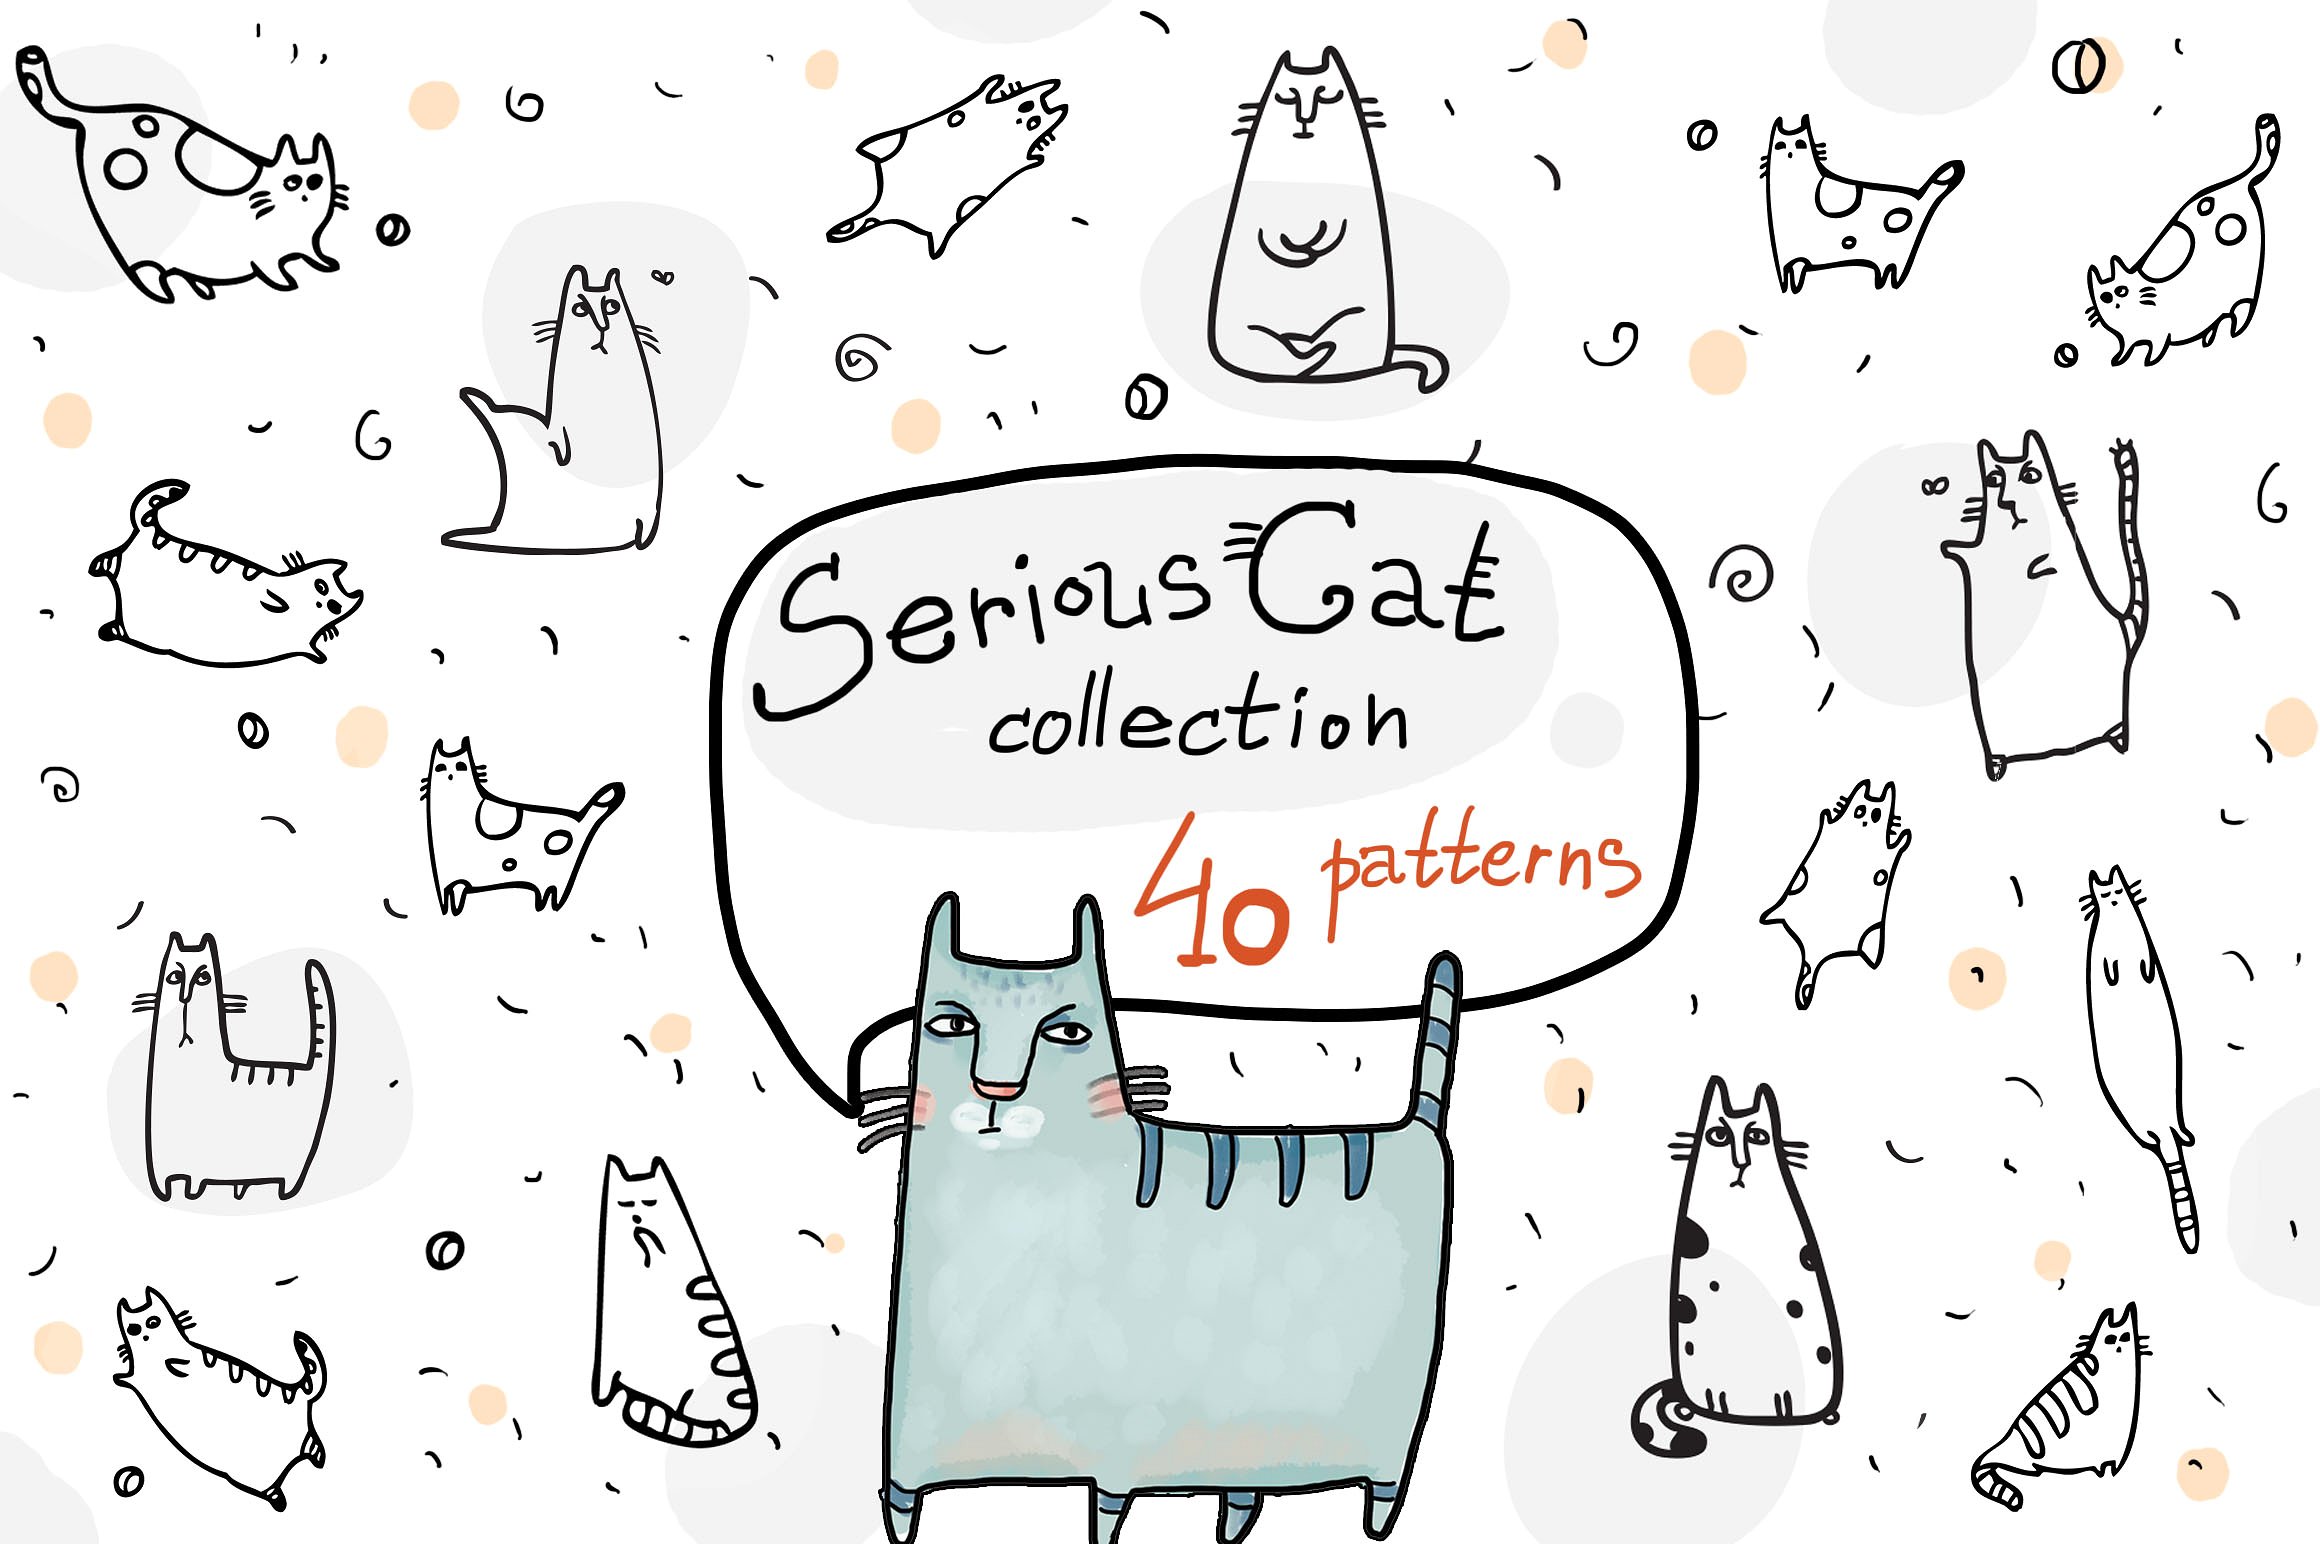 40款严肃的猫收图集 40 Serious Cat Collection Patterns插图